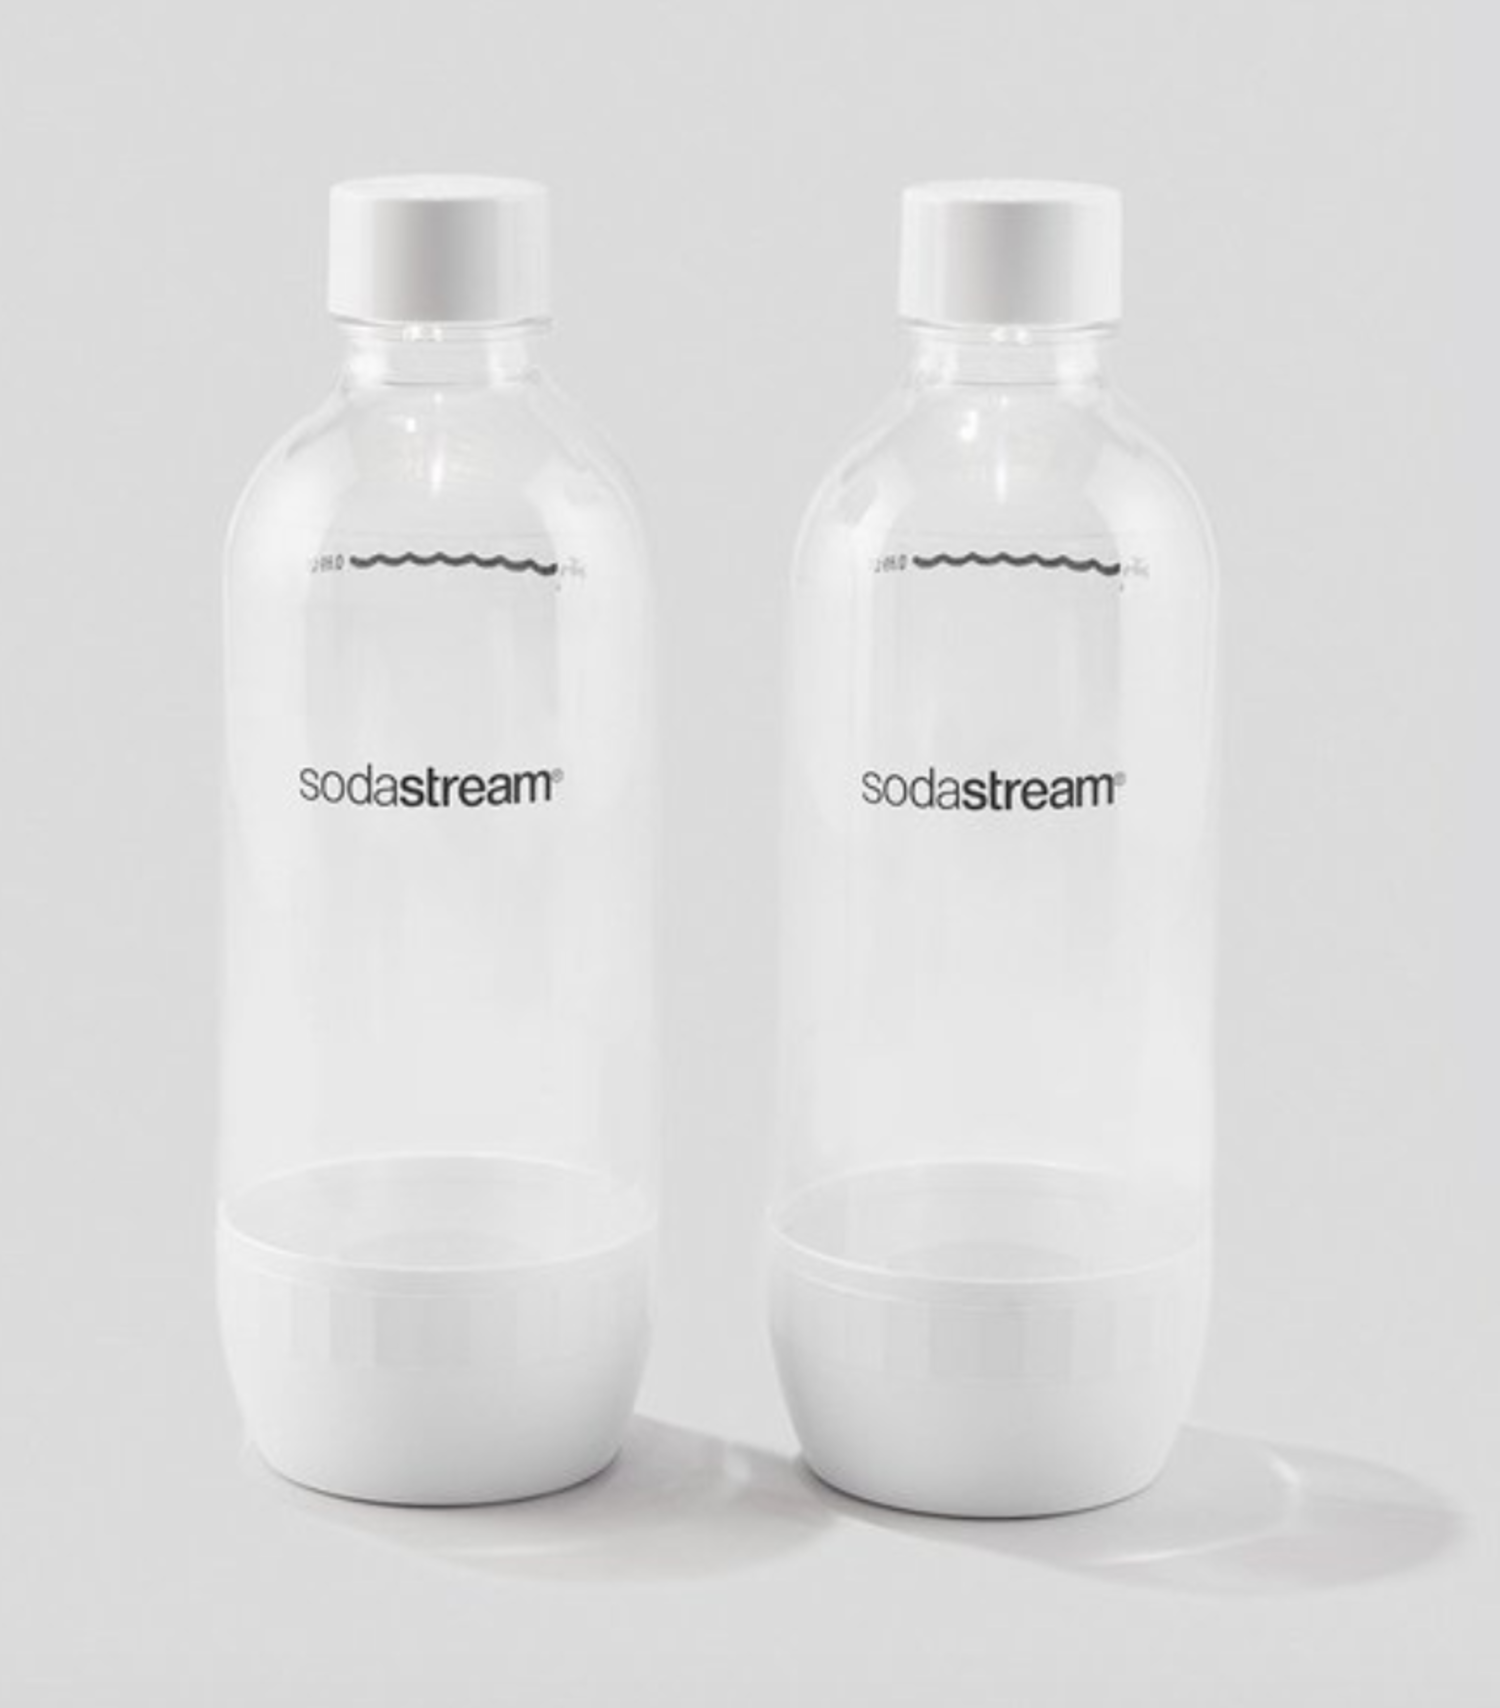 https://cdn.shoplightspeed.com/shops/633447/files/19655944/1500x4000x3/sodastream-1-liter-white-sodastream-bottles-set-of.jpg